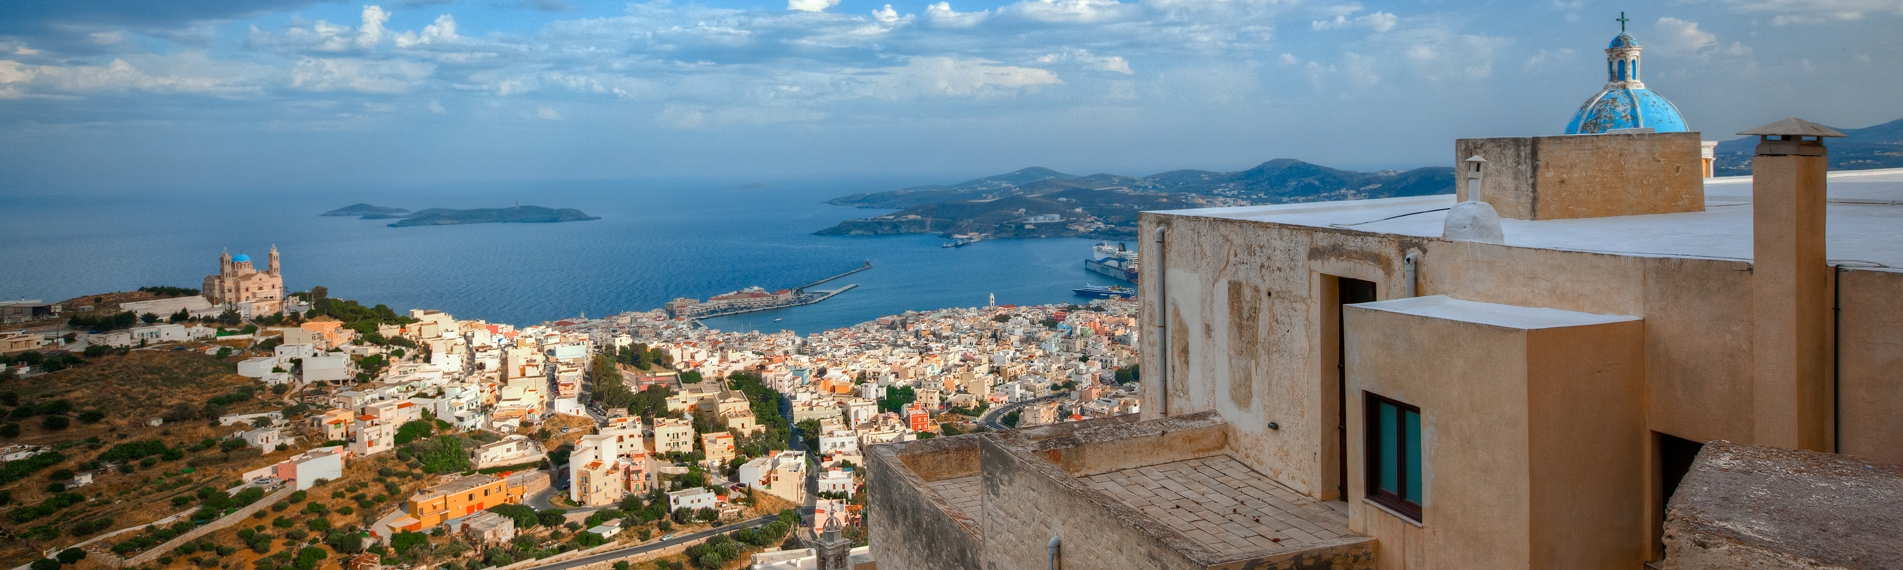 Panorama de Syros con vista hacia las casas, el golfo y otras islas del Cicaldi en el horizonte